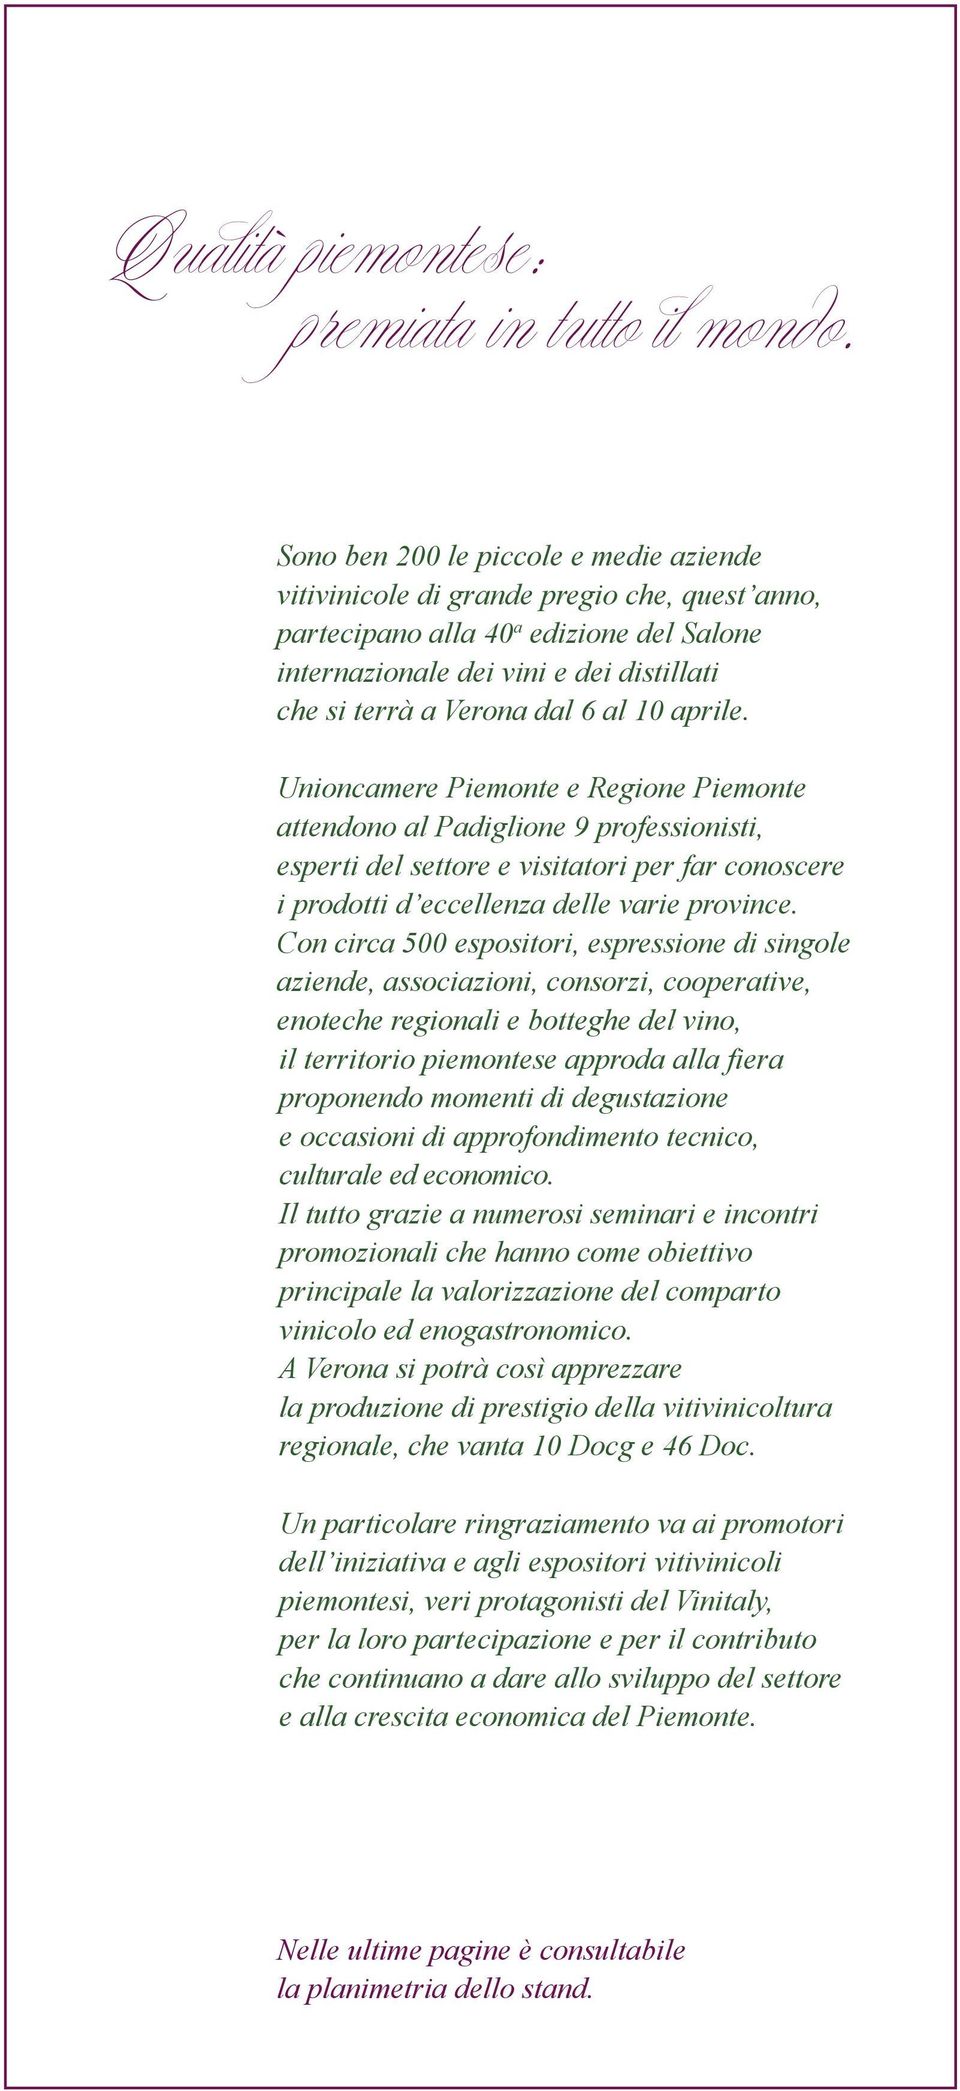 10 aprile. Unioncamere Piemonte e Regione Piemonte attendono al Padiglione 9 professionisti, esperti del settore e visitatori per far conoscere i prodotti d eccellenza delle varie province.